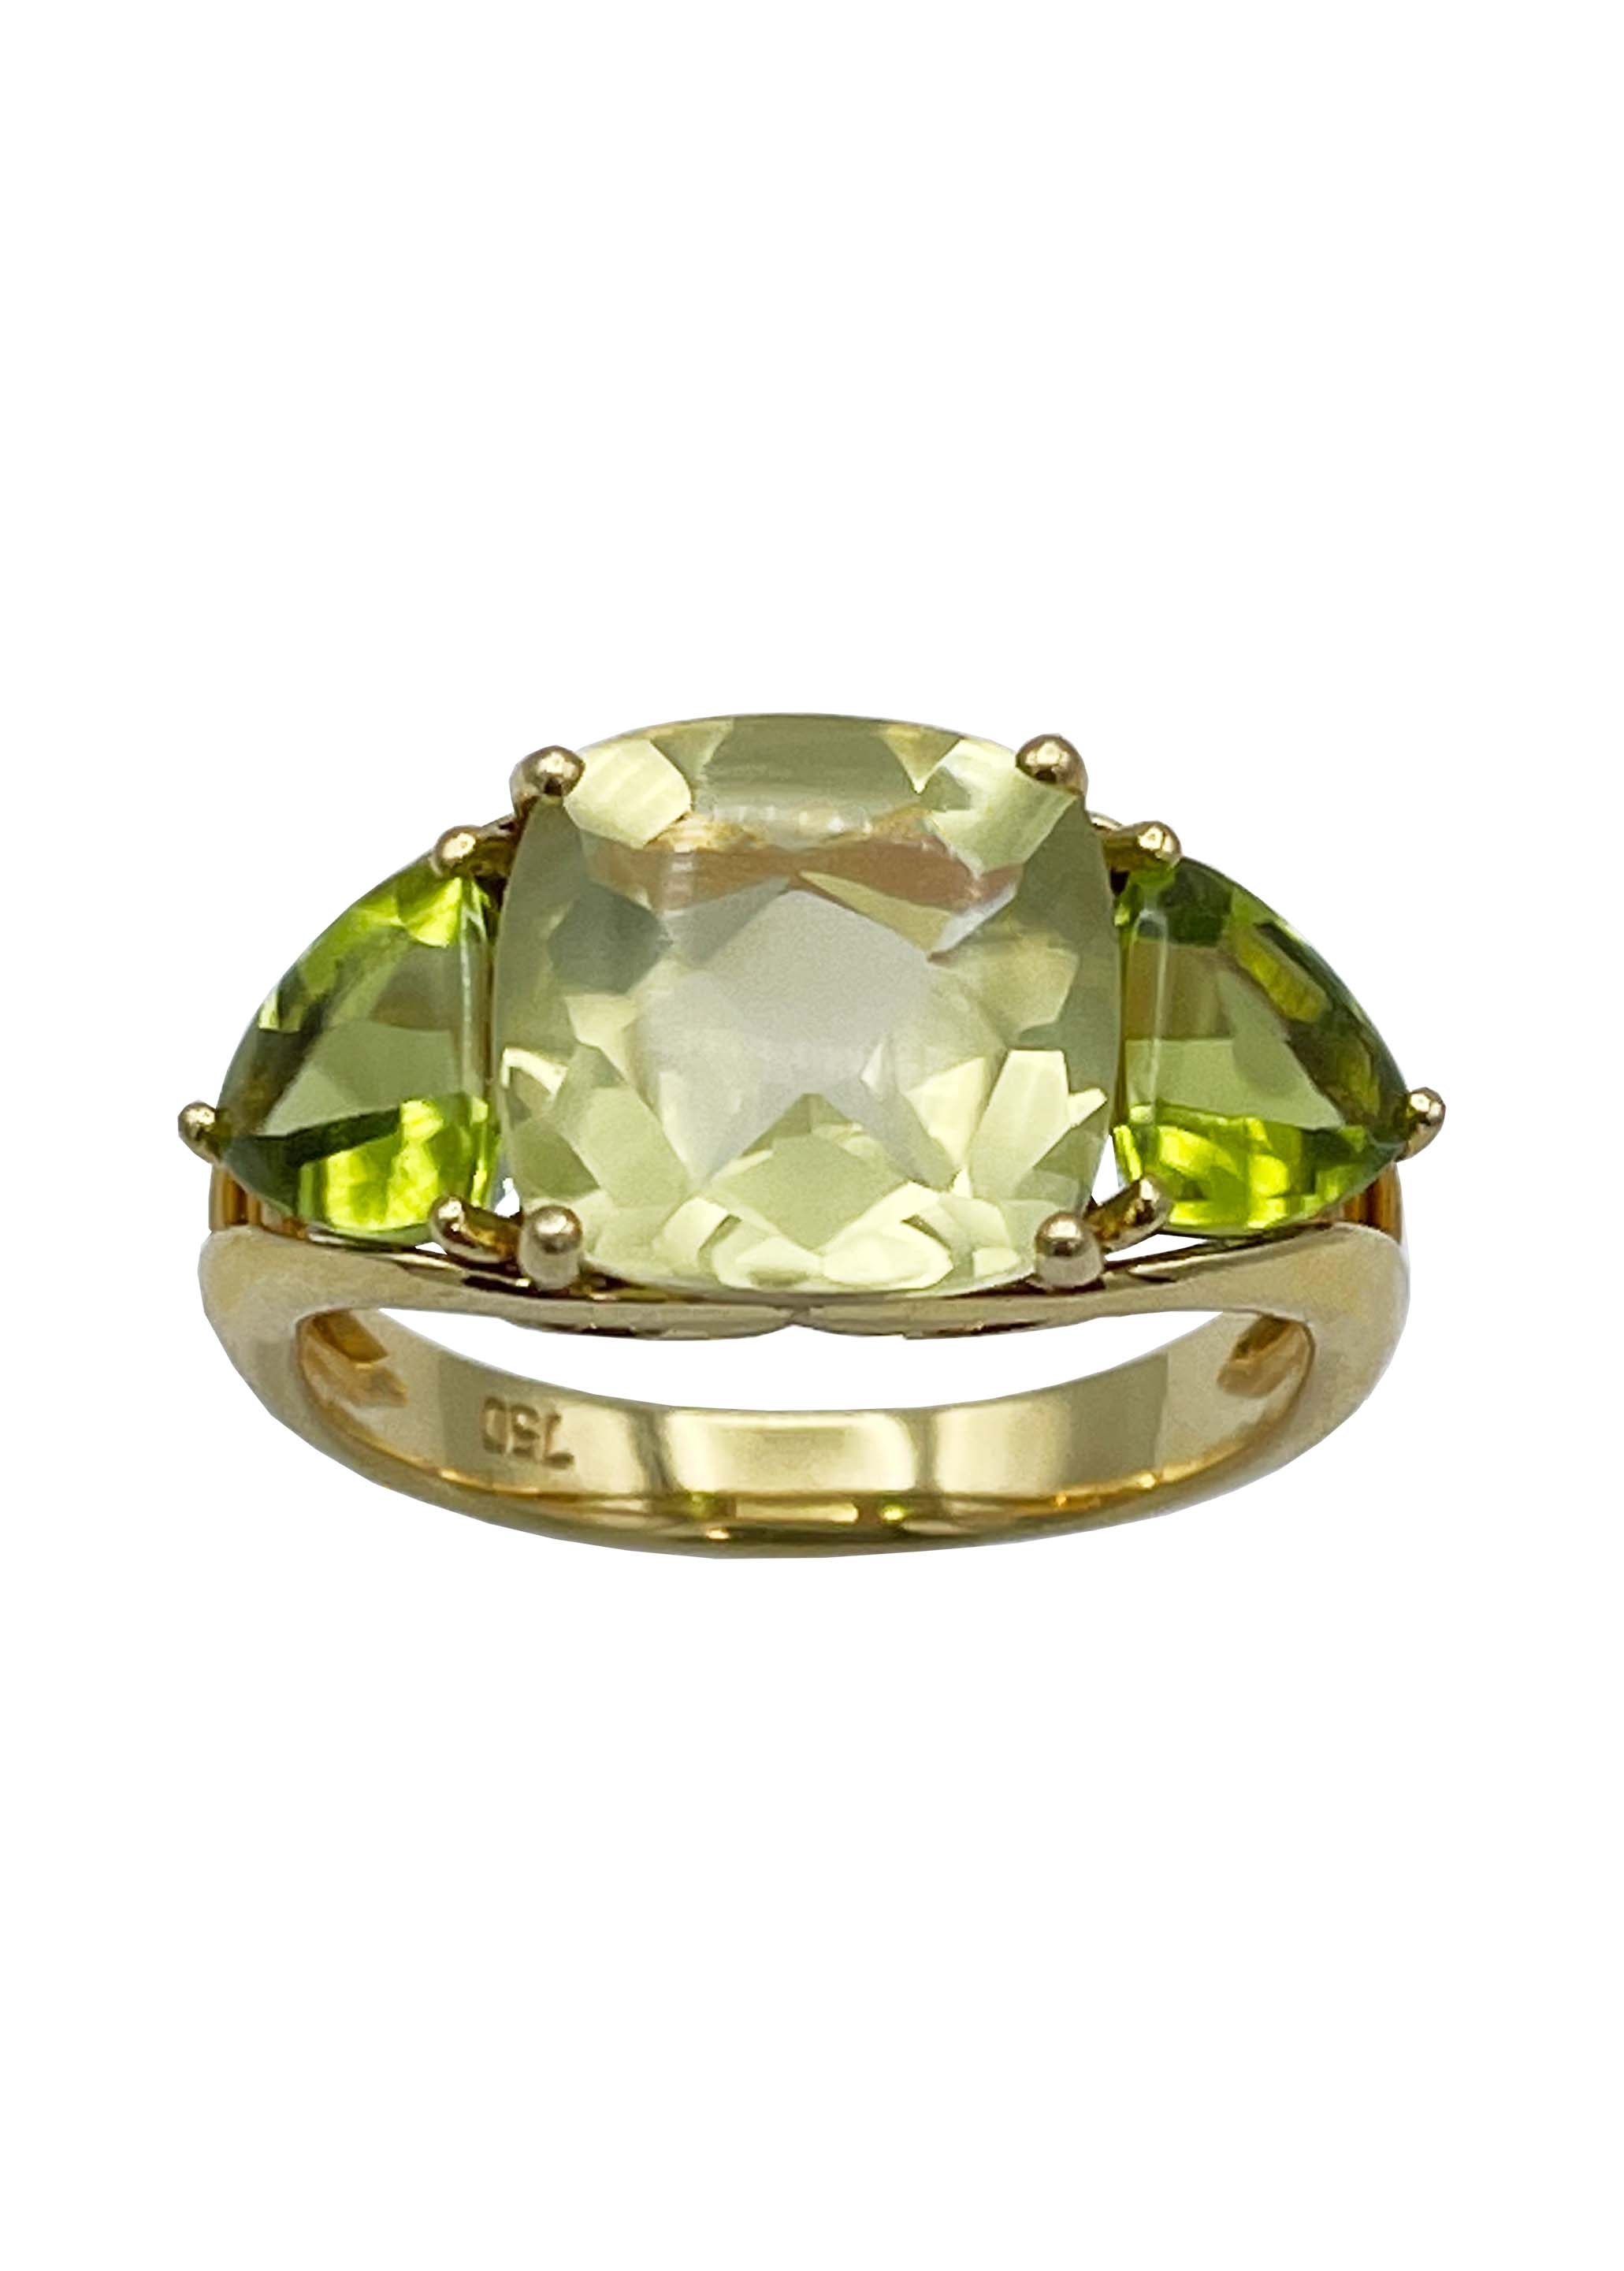 Peridot 18k Yellow Gold Ring Size 7 Image